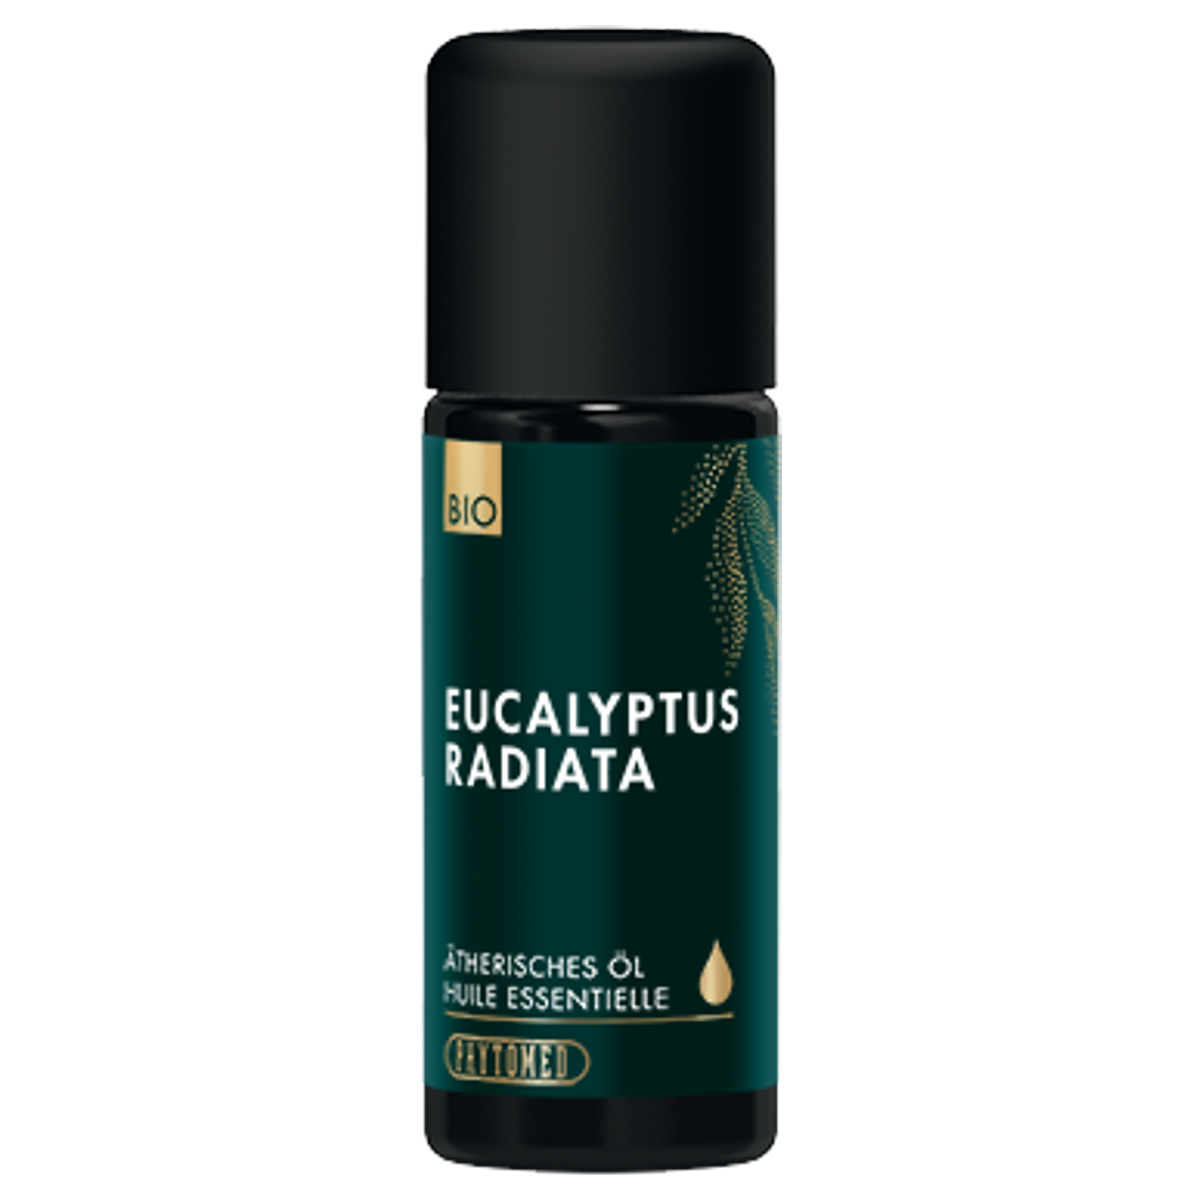 Phytomed Eucalyptus radiata ätherisches Öl Bio 10 ml